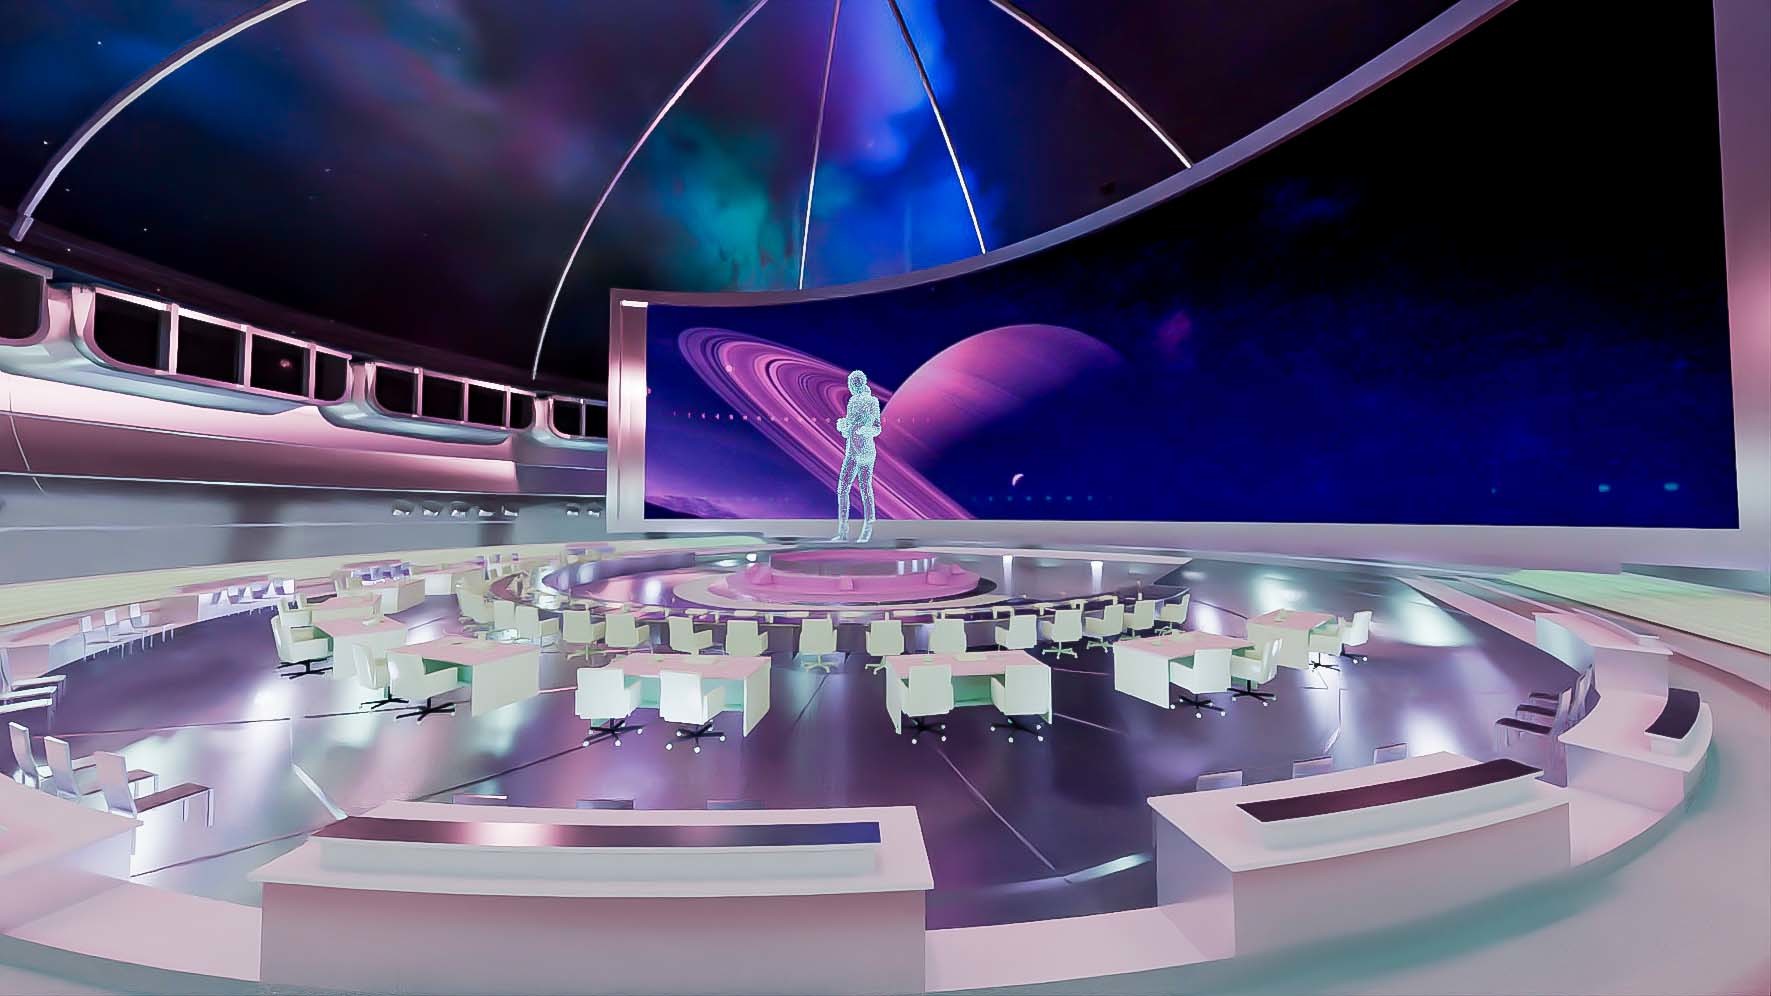 这是一张未来风格的会议室插画，中心有人影，周围是座位，背景是宇宙星空和行星，整体色调紫色调。